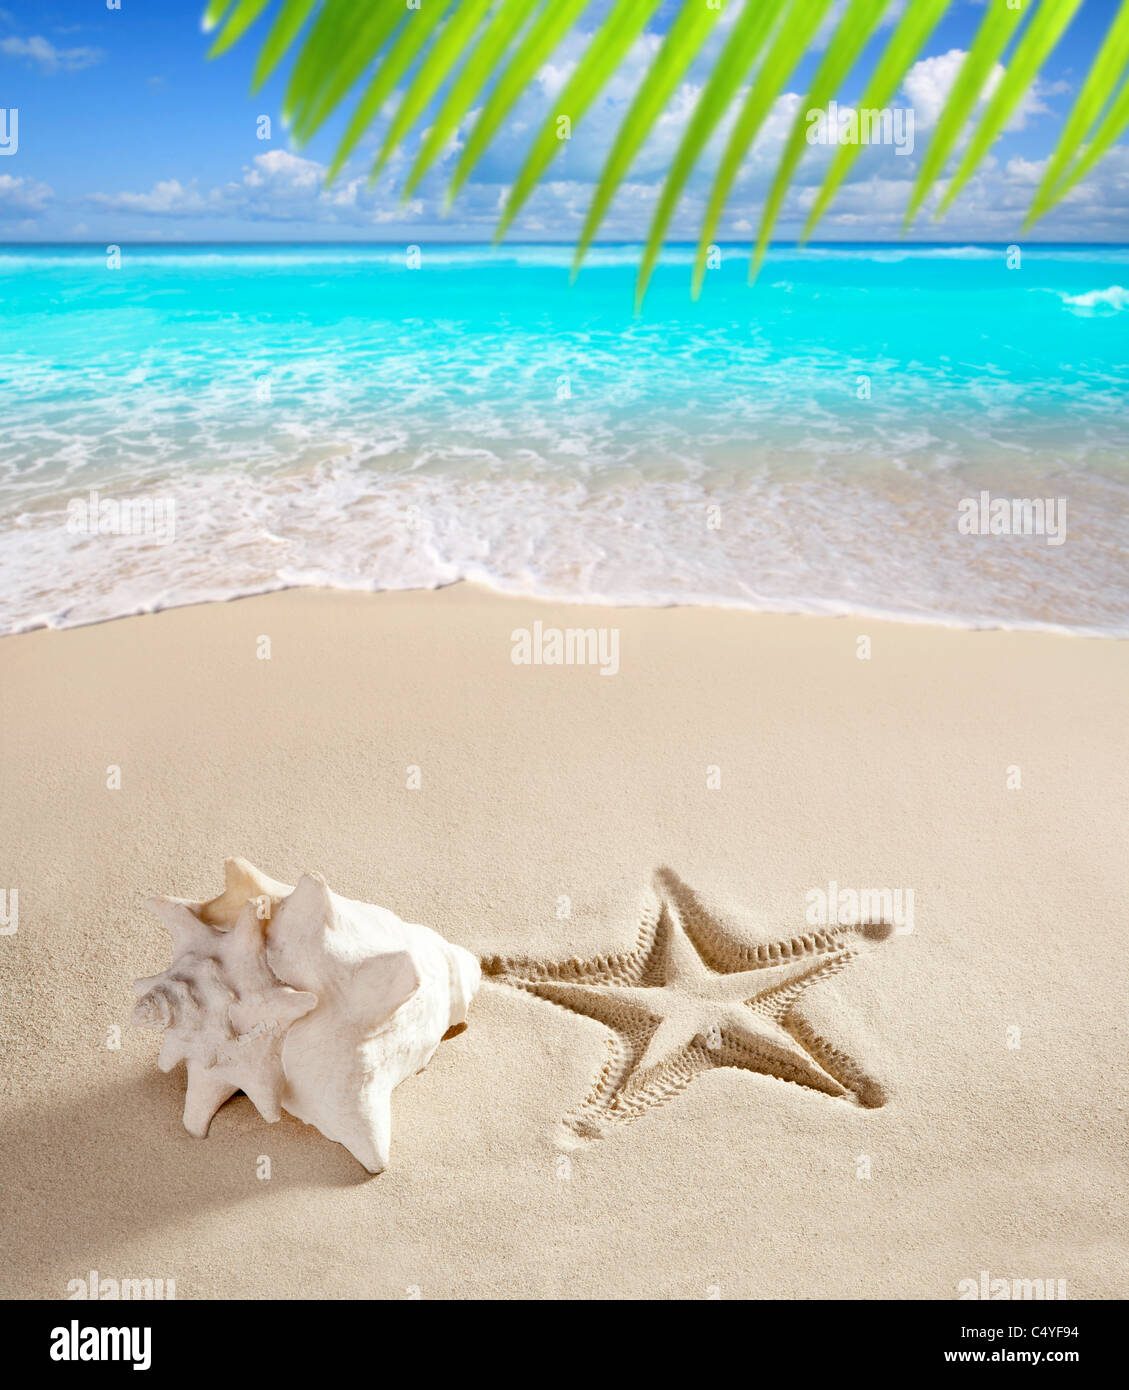 Karibik-Strand Muschel und Seesterne auf weißem Sand Sommer Urlaub Hintergrund gedruckt Stockfoto